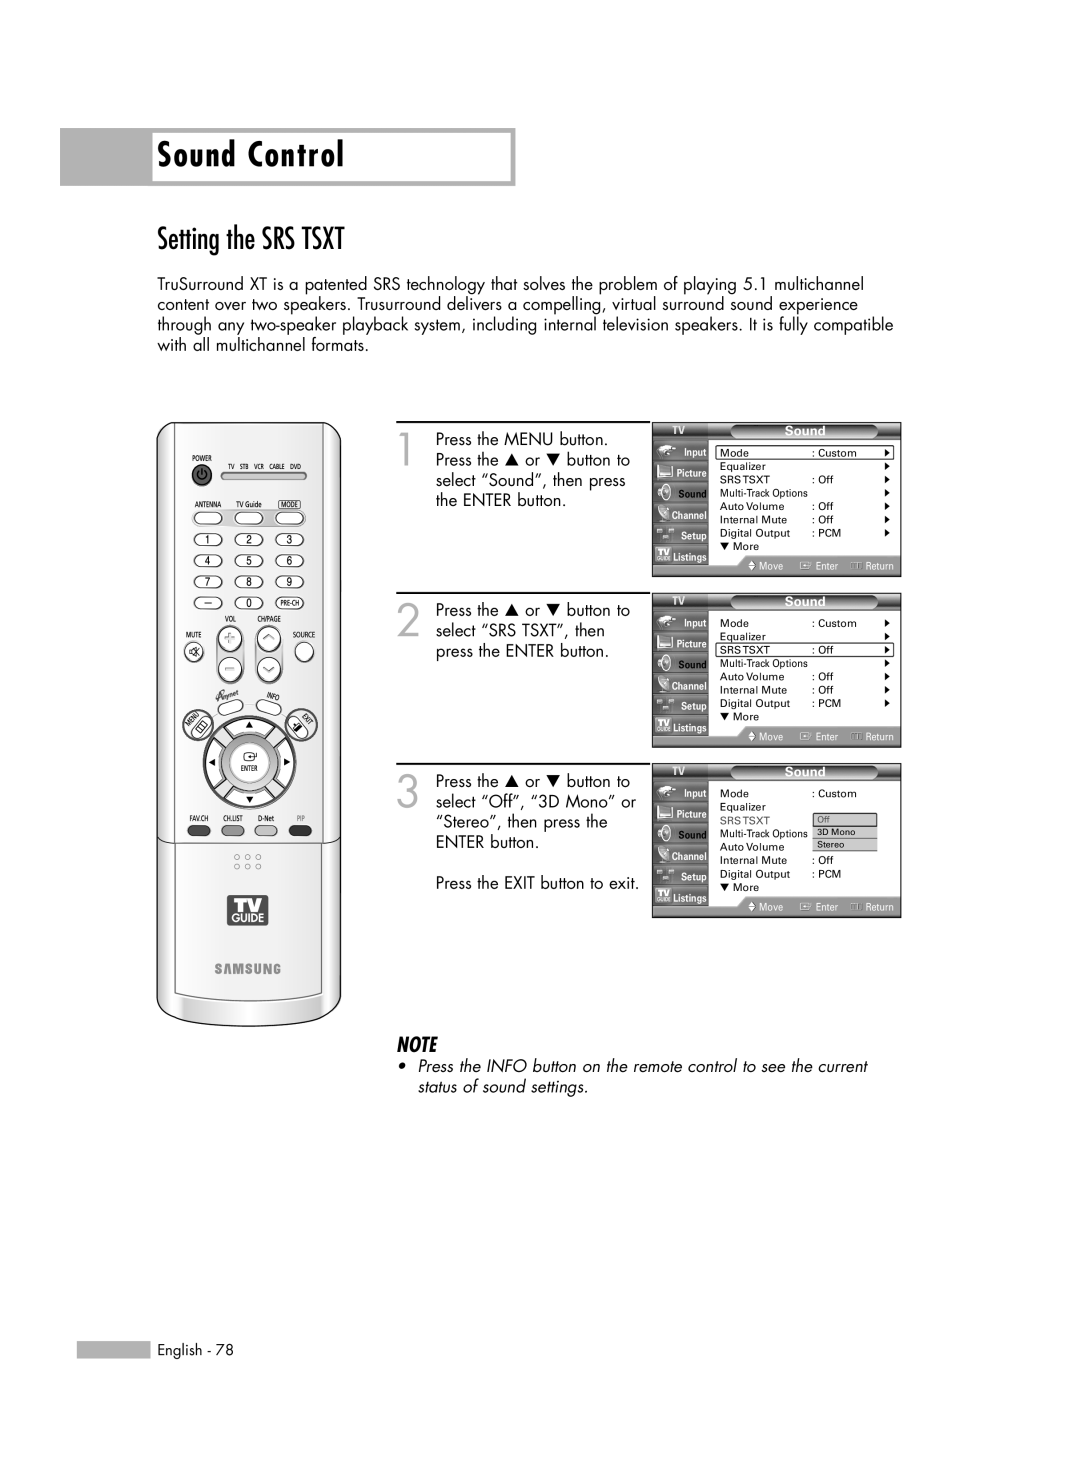 Samsung HL-R6178W, HL-R5678W, HL-R7178W manual Setting the SRS TSXT, Sound Control 